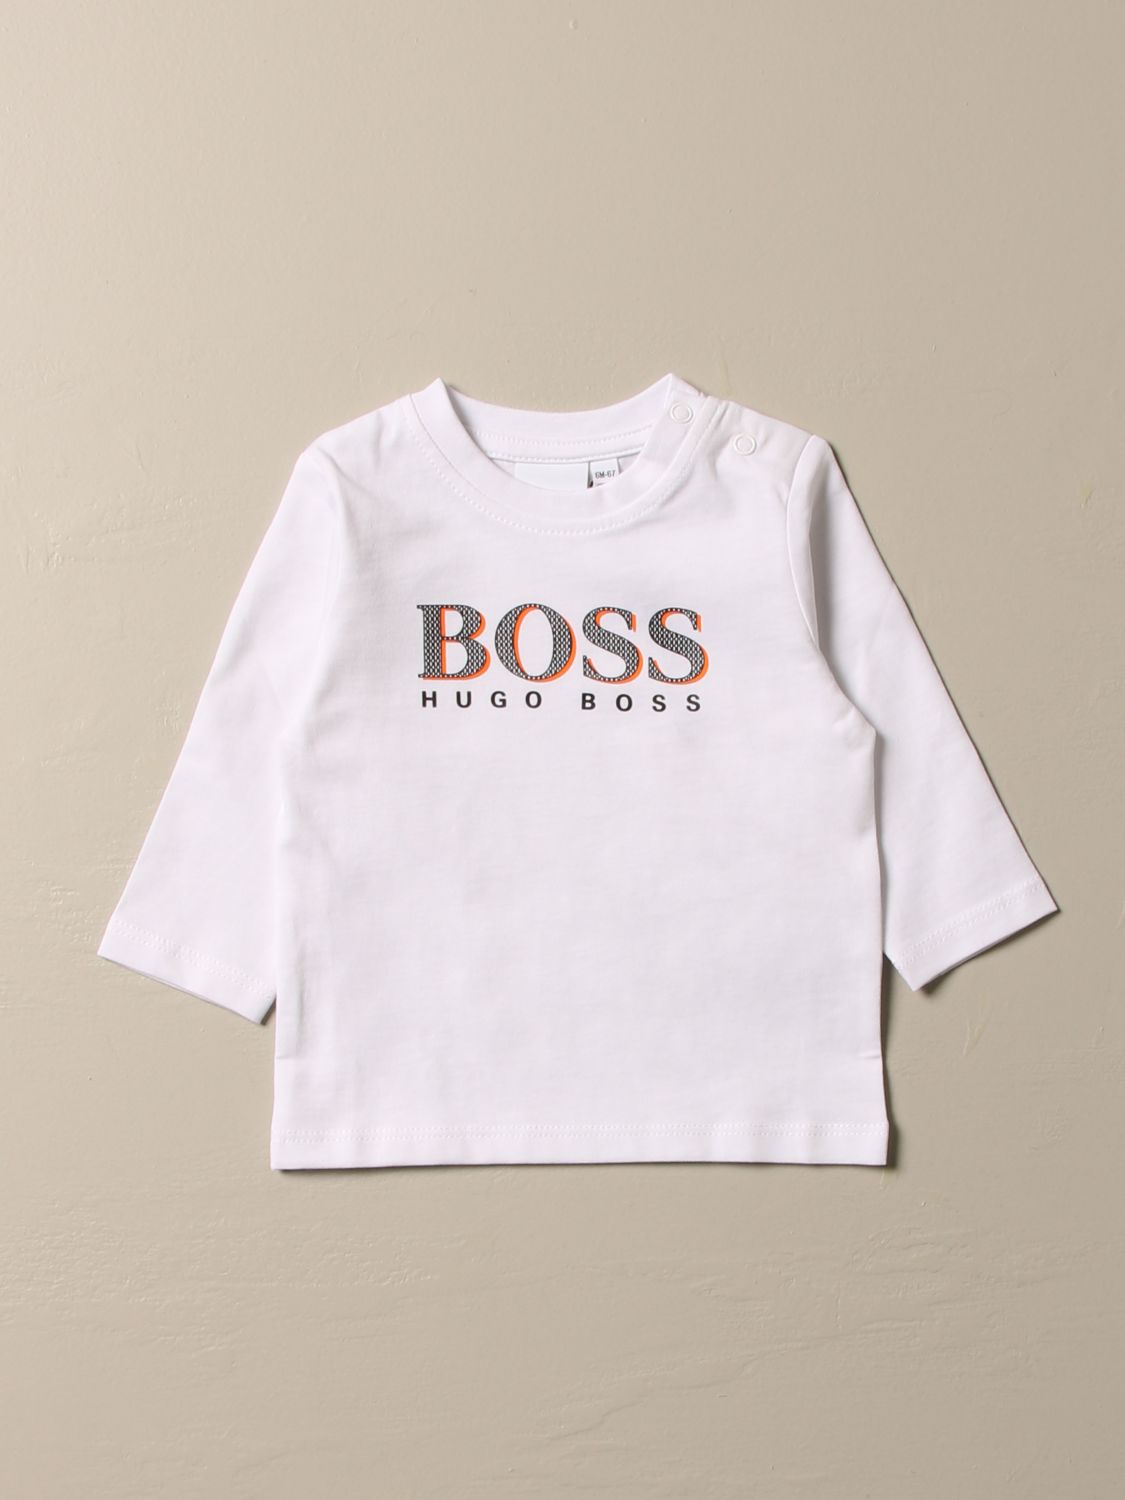 boss hugo boss kids